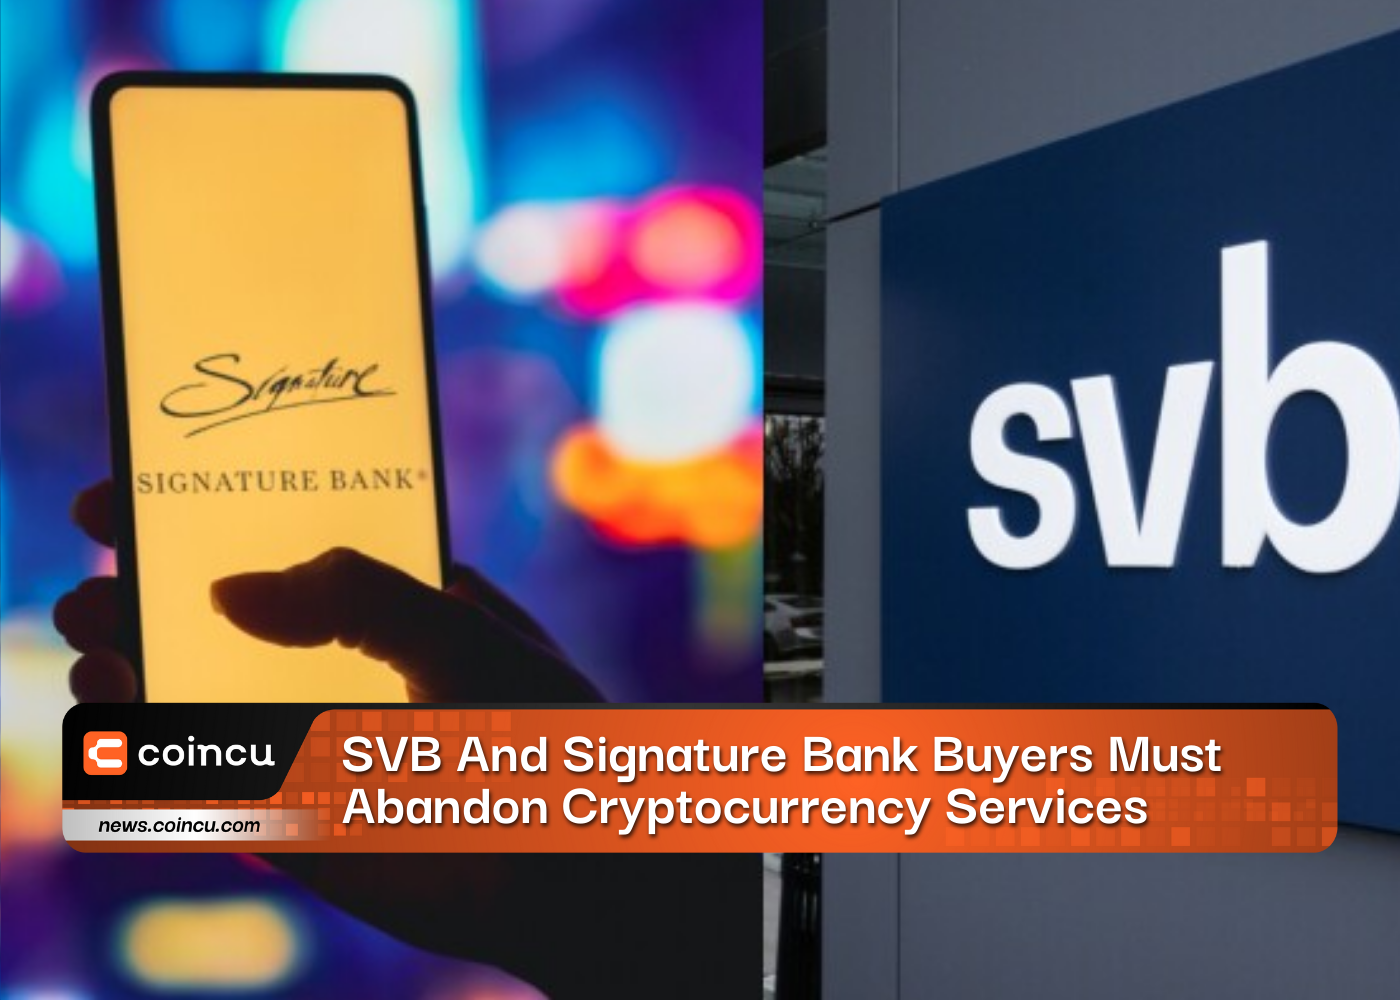 Покупатели SVB и Signature Bank должны отказаться от услуг криптовалюты